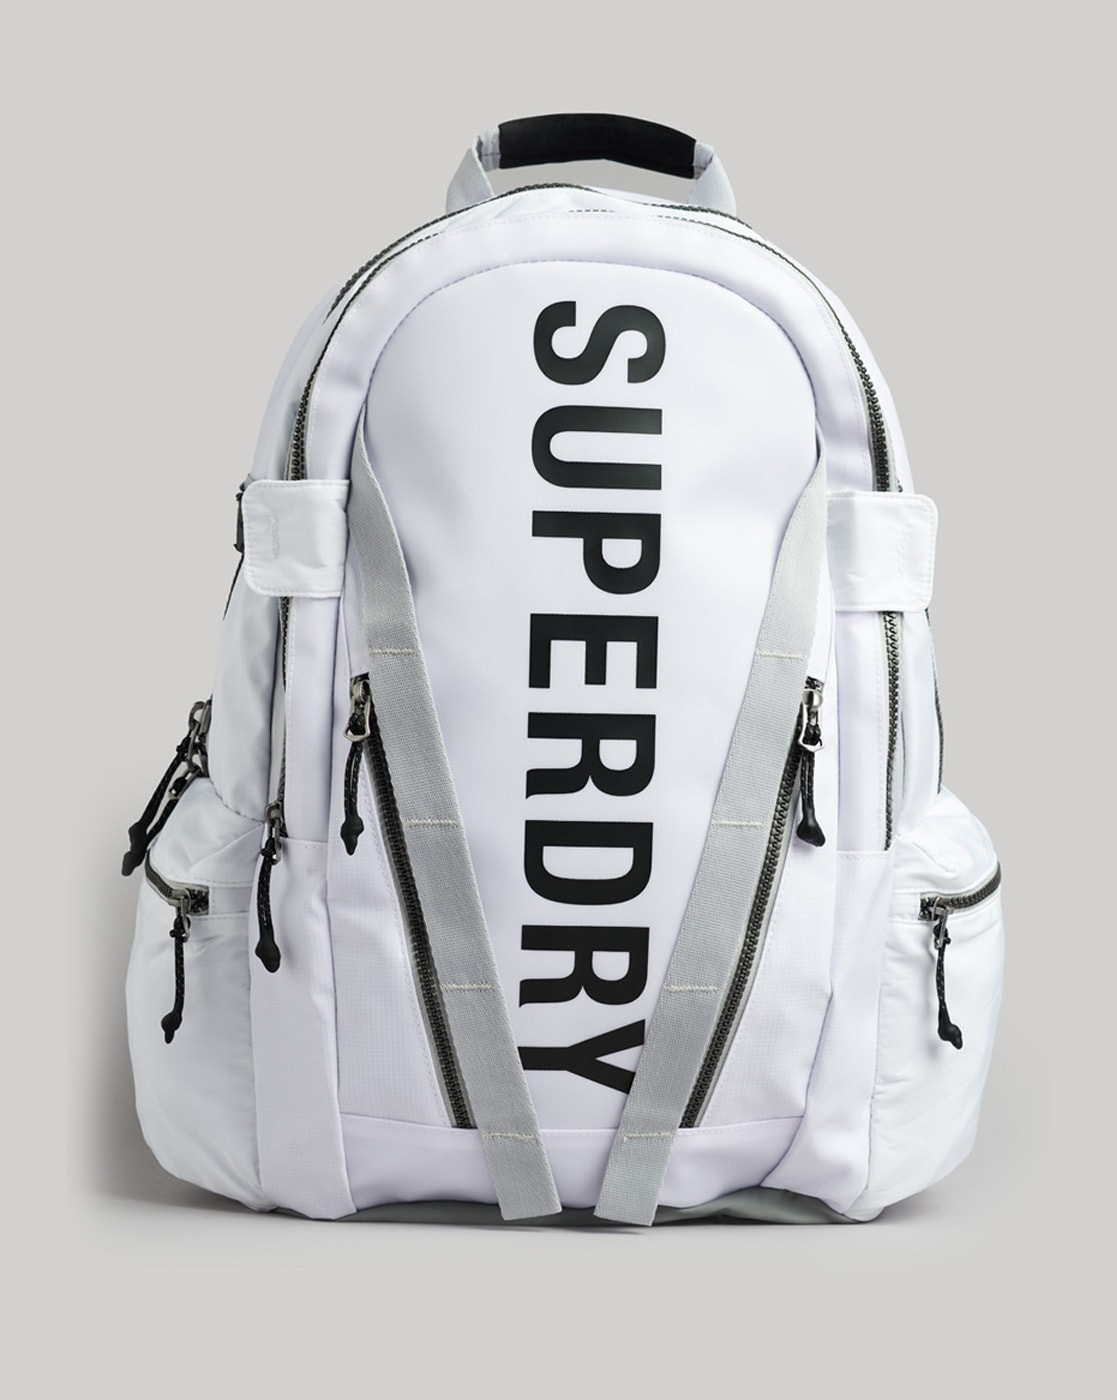 Superdry Bags - Mens Bags, Wallets, Backpacks, Rucksacks | Superdry bags, Superdry  backpack, Superdry